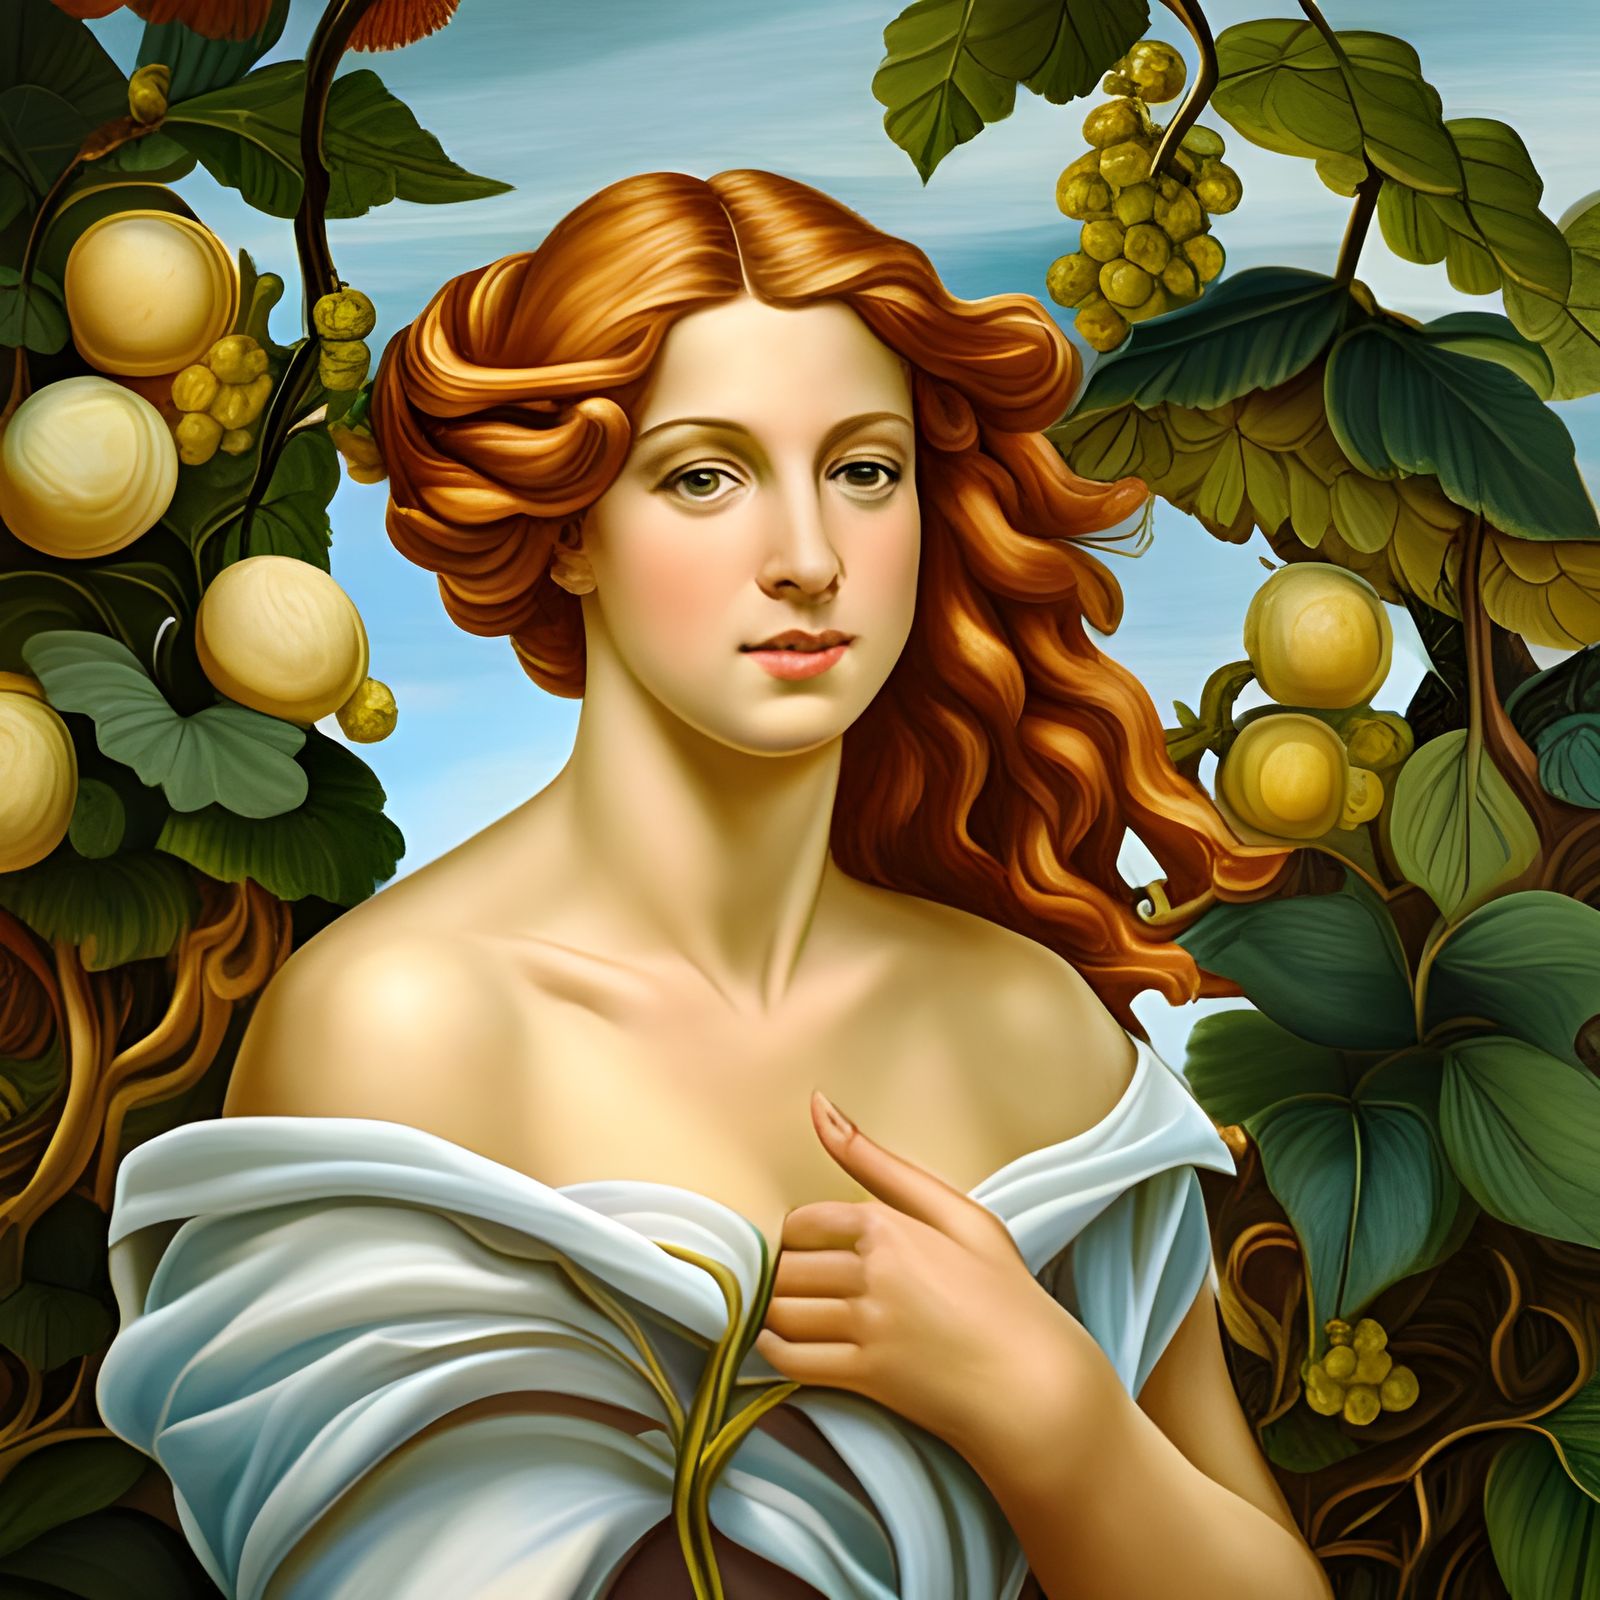 Venus in Vines